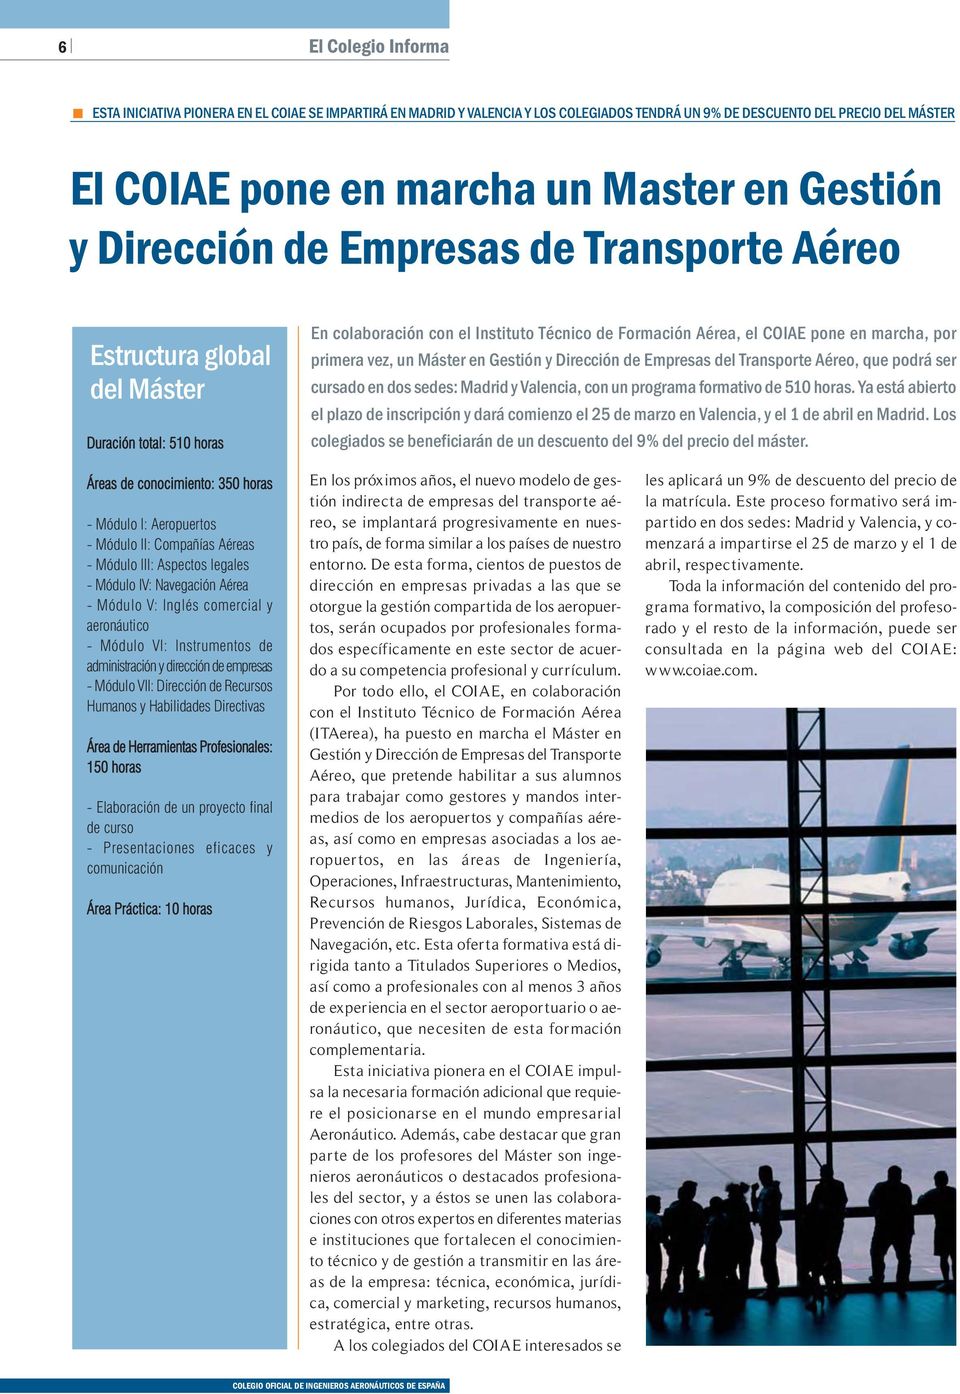 primera vez, un Máster en Gestión y Dirección de Empresas del Transporte Aéreo, que podrá ser cursado en dos sedes: Madrid y Valencia, con un programa formativo de 510 horas.